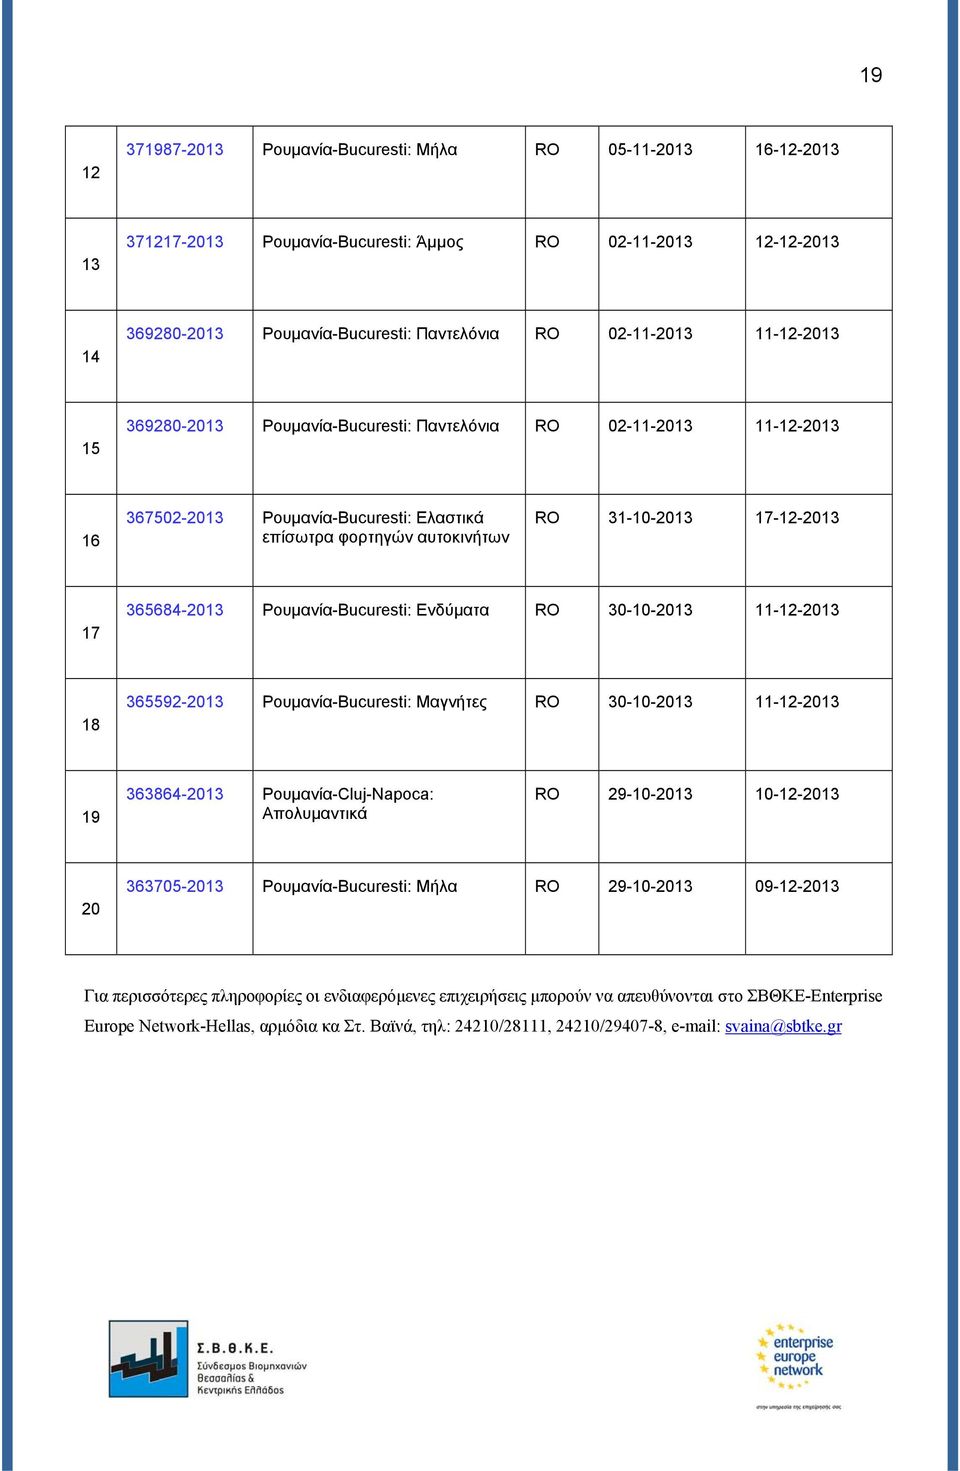 Ρουμανία-Bucuresti: Ενδύματα RO 30-10-2013 11-12-2013 18 365592-2013 Ρουμανία-Bucuresti: Μαγνήτες RO 30-10-2013 11-12-2013 19 363864-2013 Ρουμανία-Cluj-Napoca: Απολυμαντικά RO 29-10-2013 10-12-2013